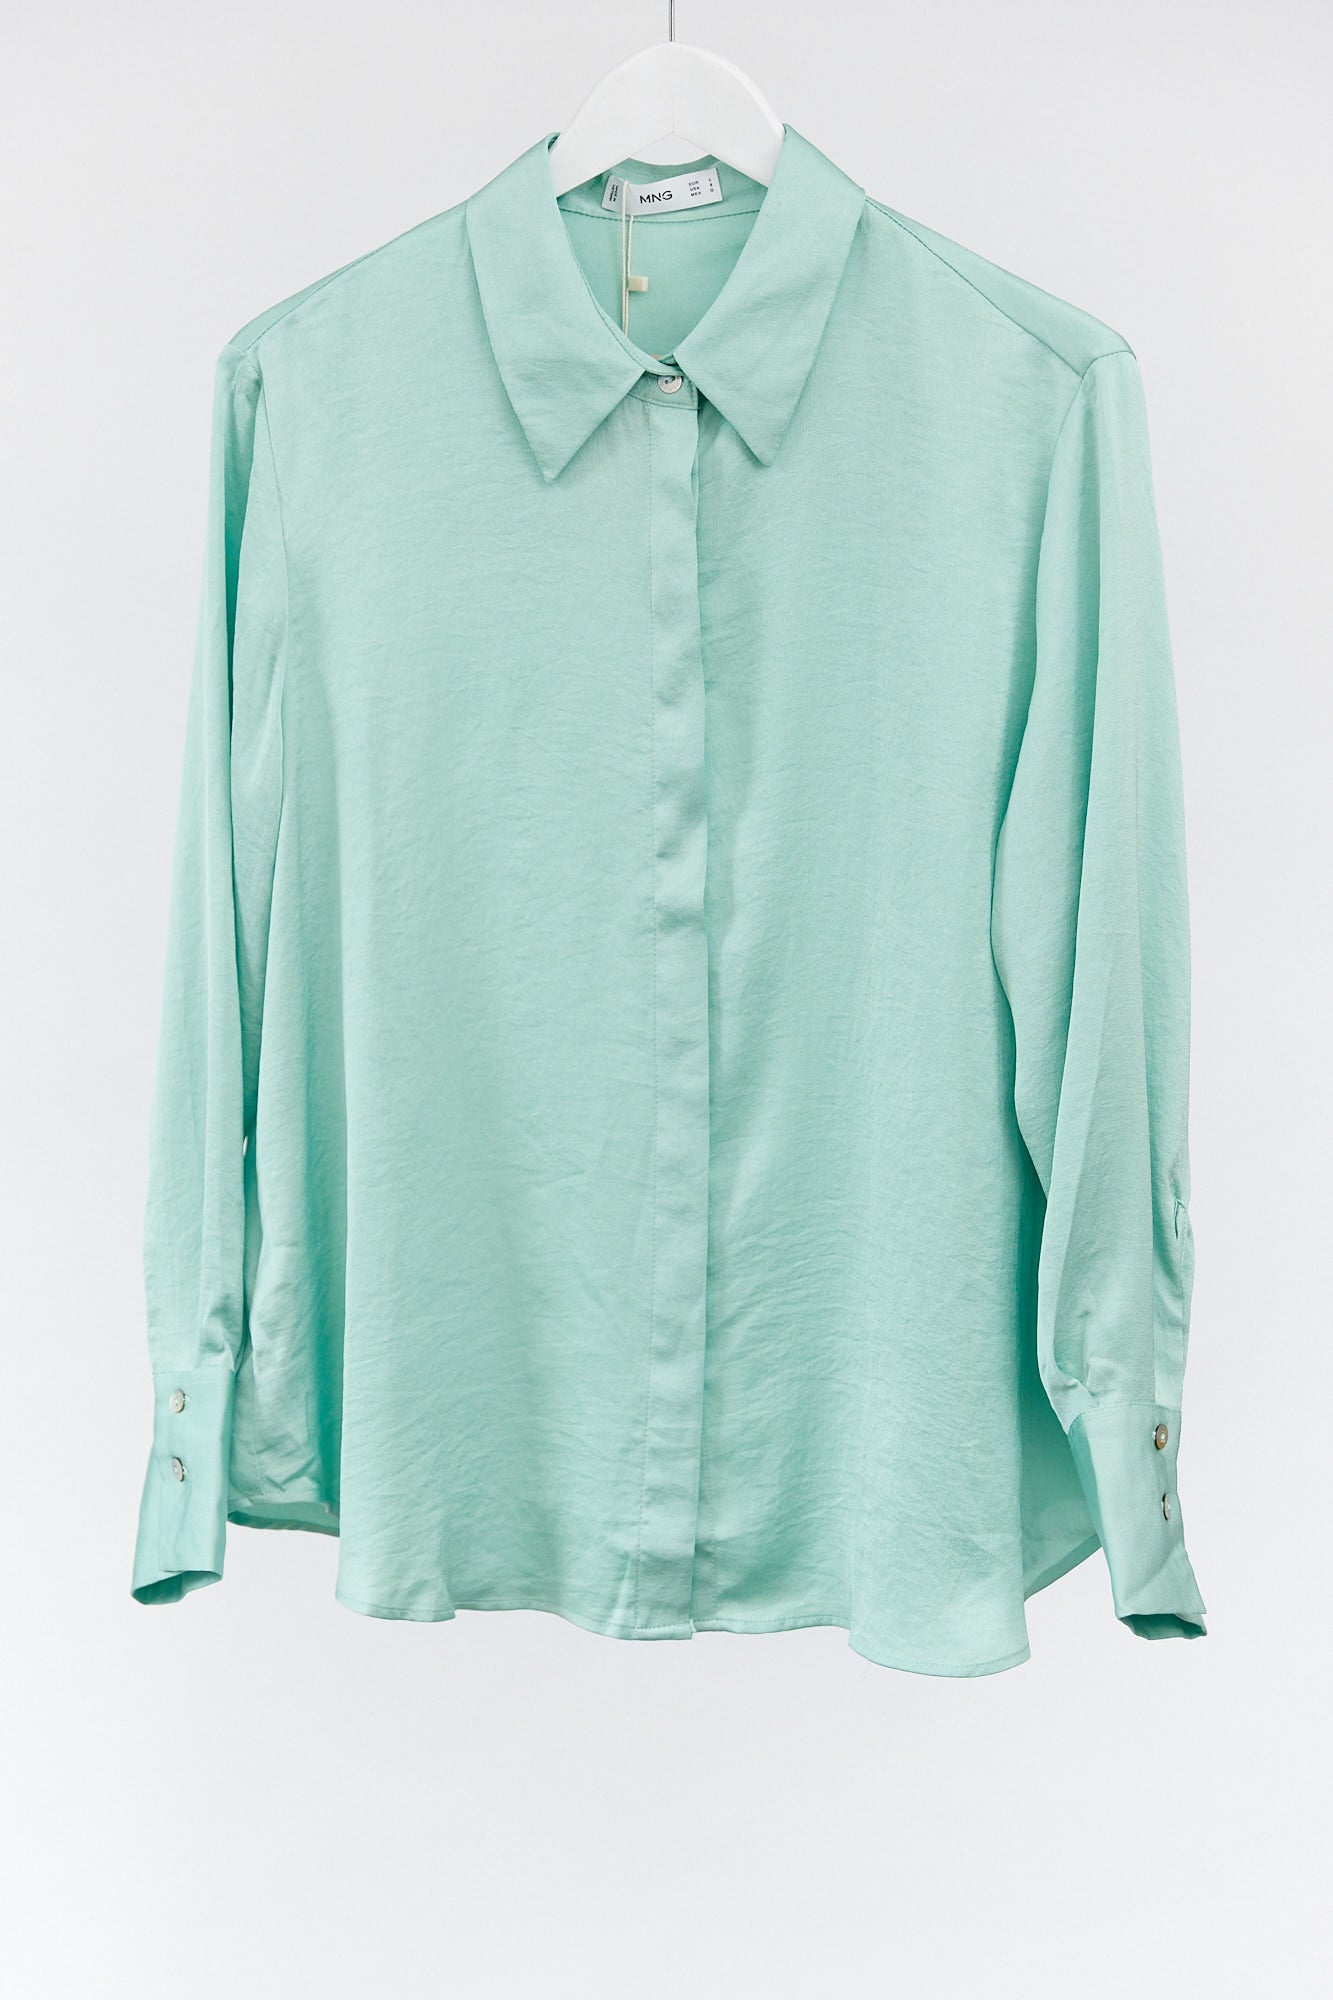 Womens Mango Turquoise satin shirt size medium